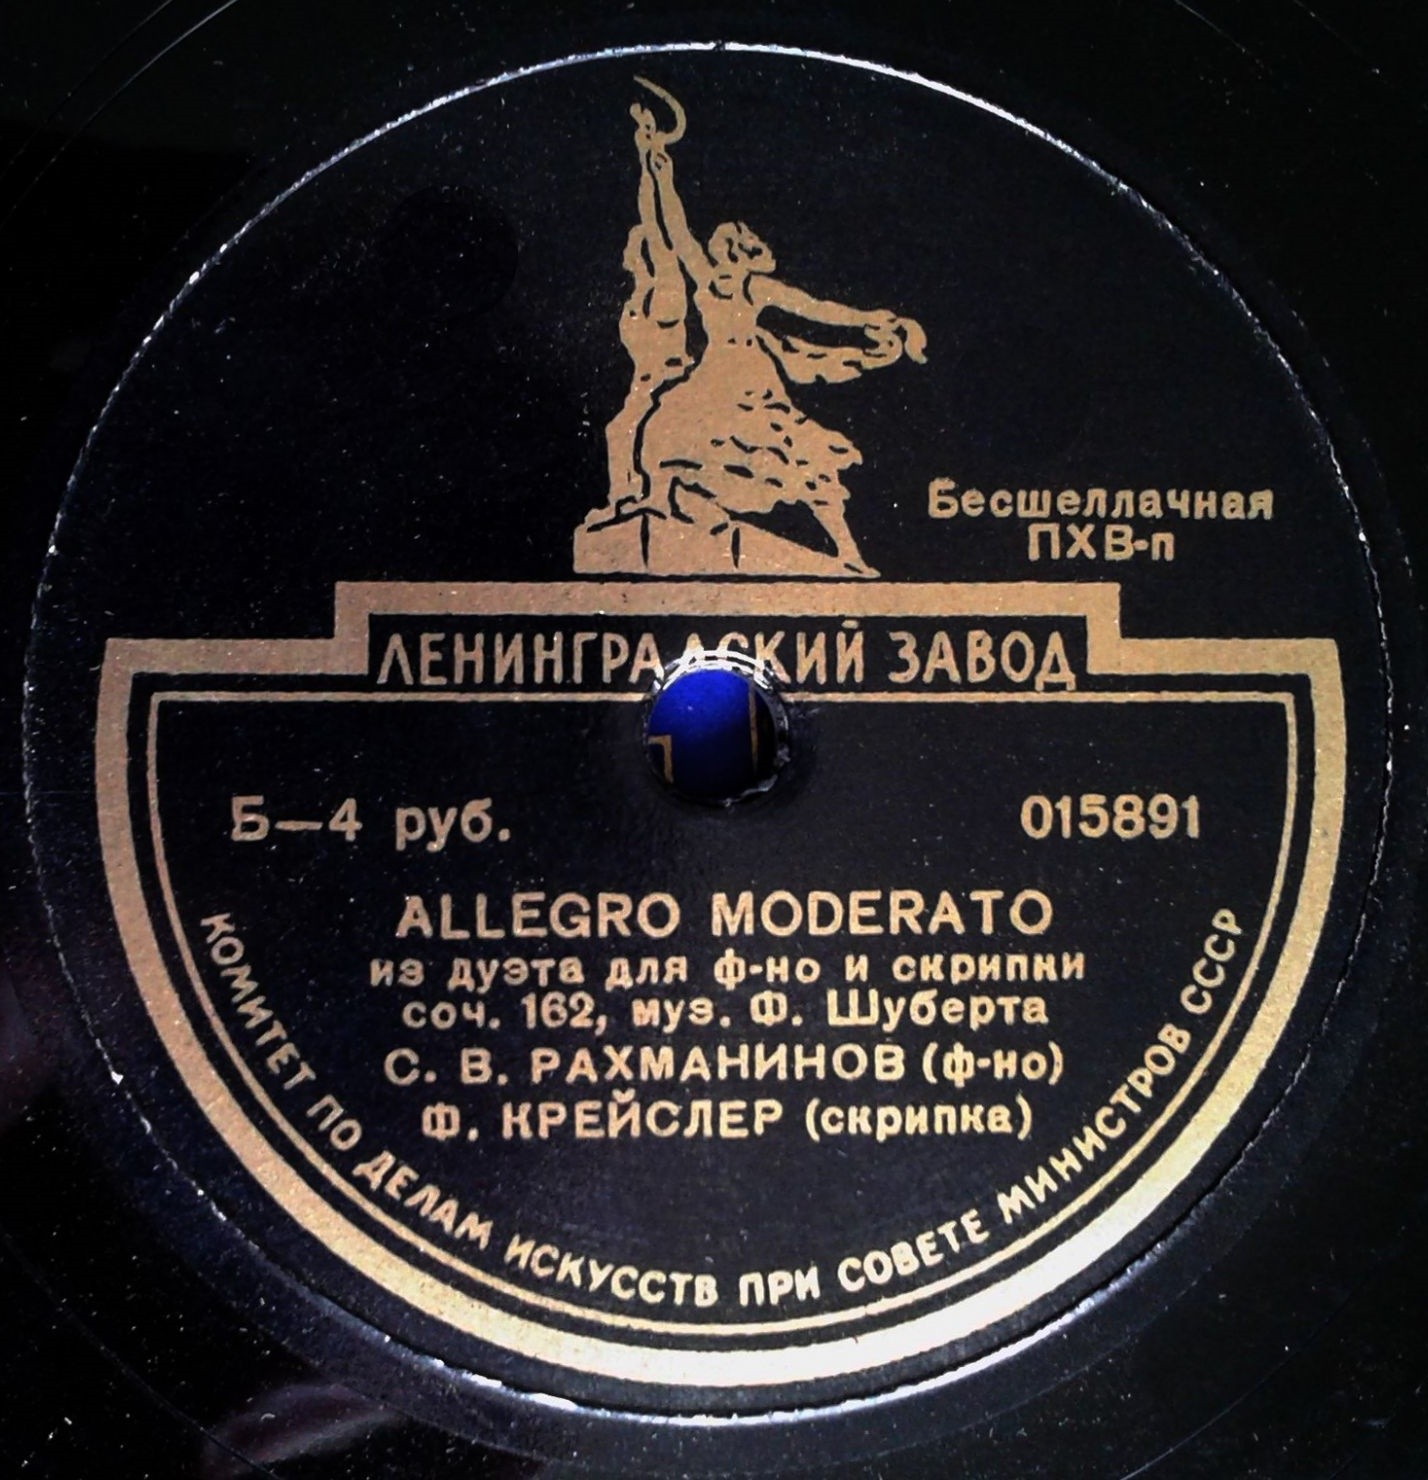 Ф. ШУБЕРТ (1797–1828): Allegro moderato из дуэта для скрипки и фортепиано, соч.162 (С. Рахманинов, Ф. Крейслер)